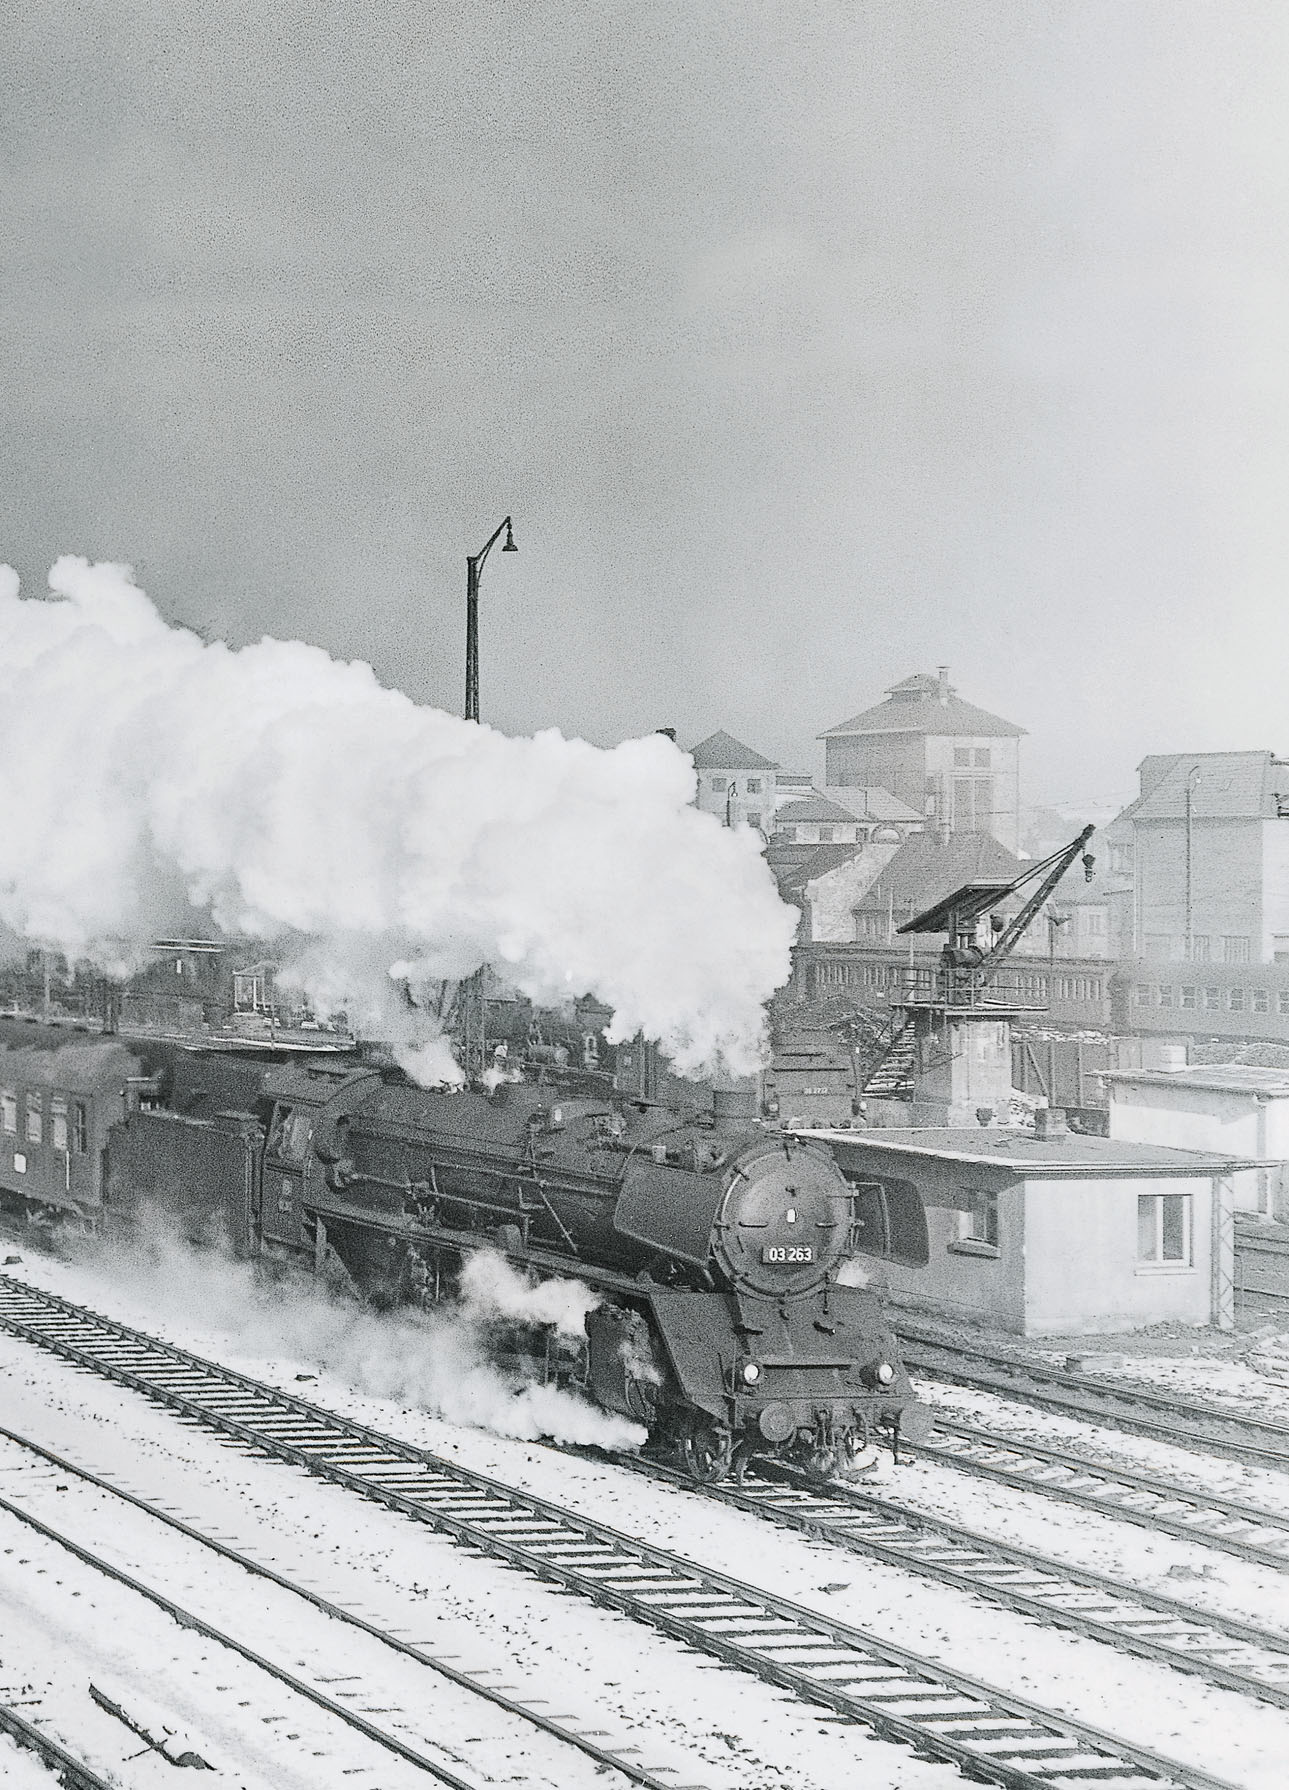 Winter-Dampf 1 Alltag im Februar 1957 in Wiesbaden: Mit mächtigem Volldampf passiert 03 263 vor D 504 das Gelände des dortigen Bahnbetriebswerks